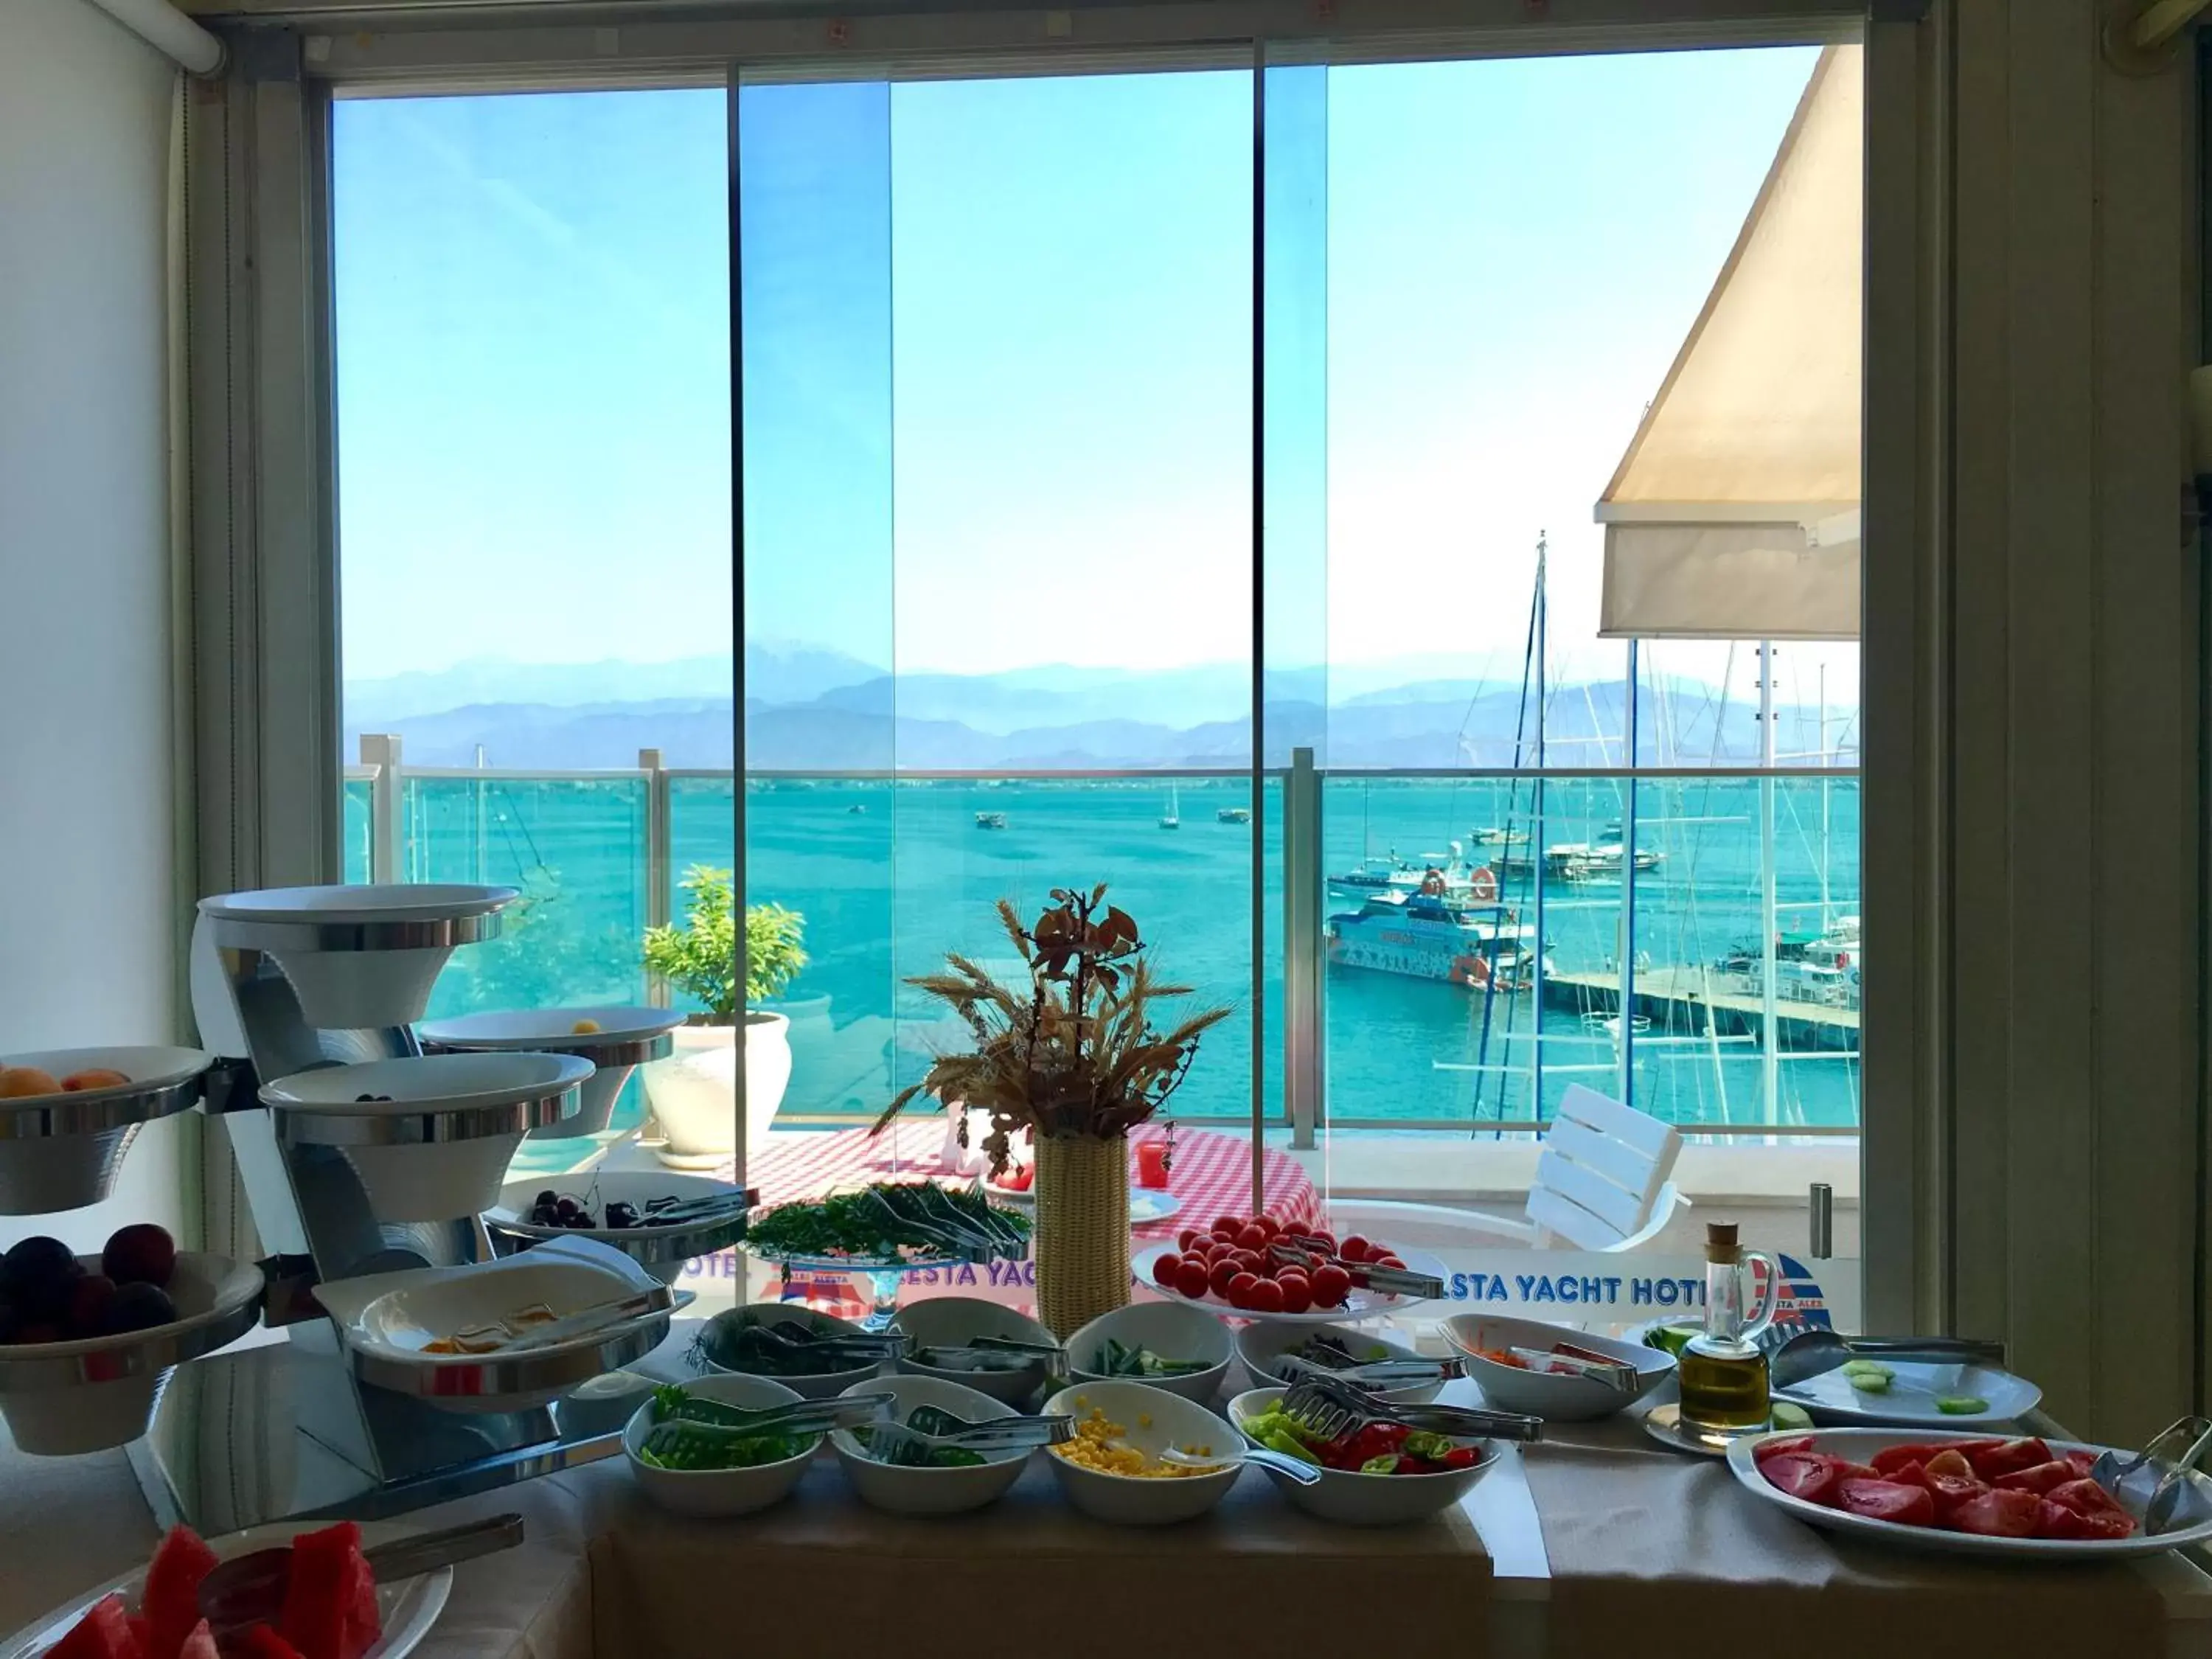 Breakfast in Alesta Yacht Hotel